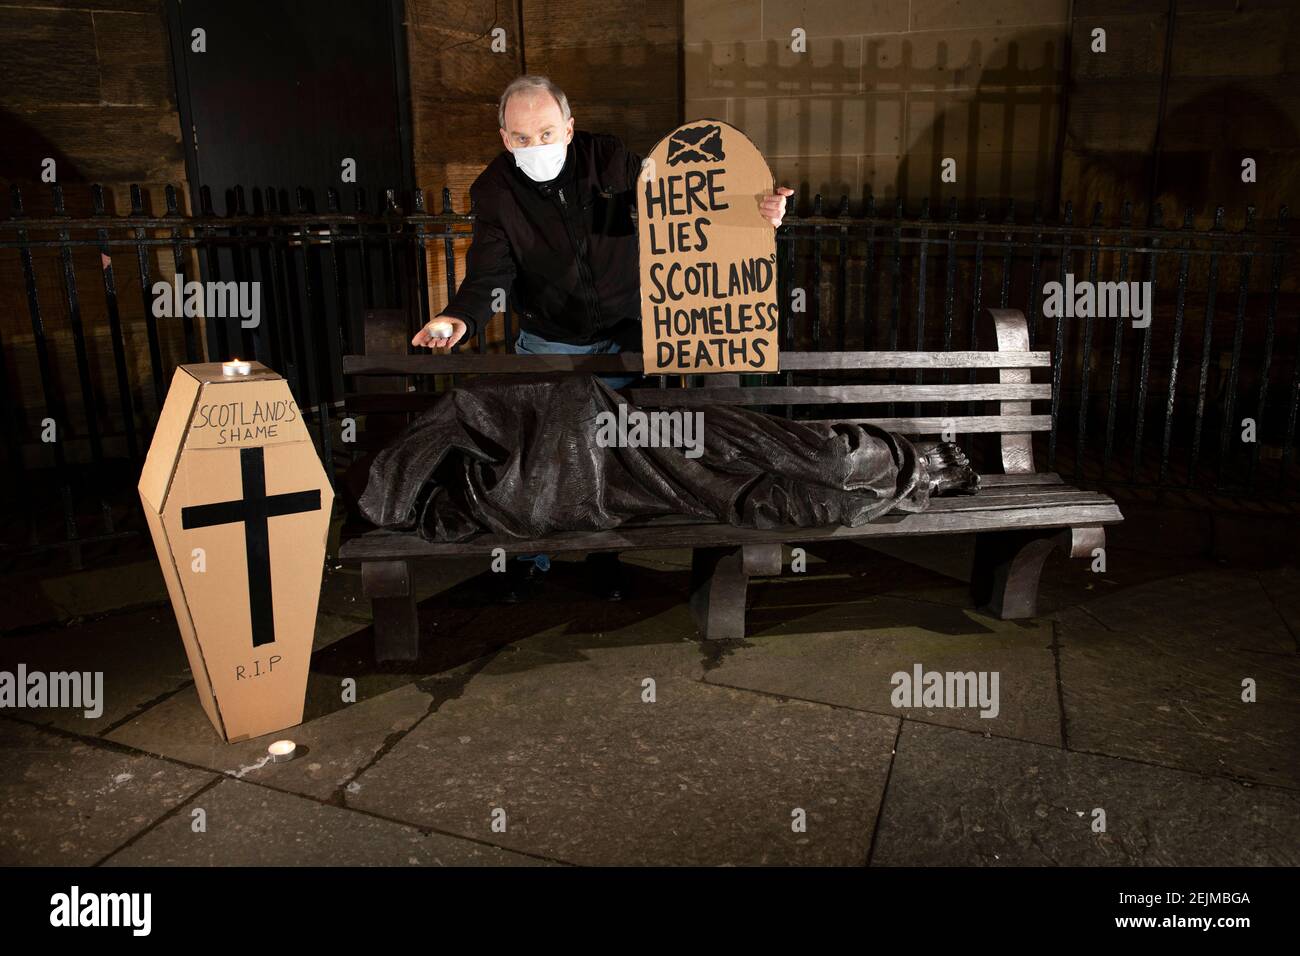 Glasgow, Escocia, Reino Unido. 22 de febrero de 2021. En la foto: Sean Clerkin - Organización Escocesa de inquilinos, sosteniendo un cartel en forma de lápida que dice: "AQUÍ ESTÁ LA MUERTE DE LOS ESCOCESES SIN HOGAR". Hoy, 23 de febrero de 21, el Gobierno escocés ha publicado las cifras de muertes sin hogar 3 días antes, que aumentan en un 11% con respecto al año pasado. El enlace https://www.nrscotland.gov.uk/news/2021/homeless-deaths-2019 muestra el artículo de hoy. Crédito: Colin Fisher/Alamy Live News Foto de stock